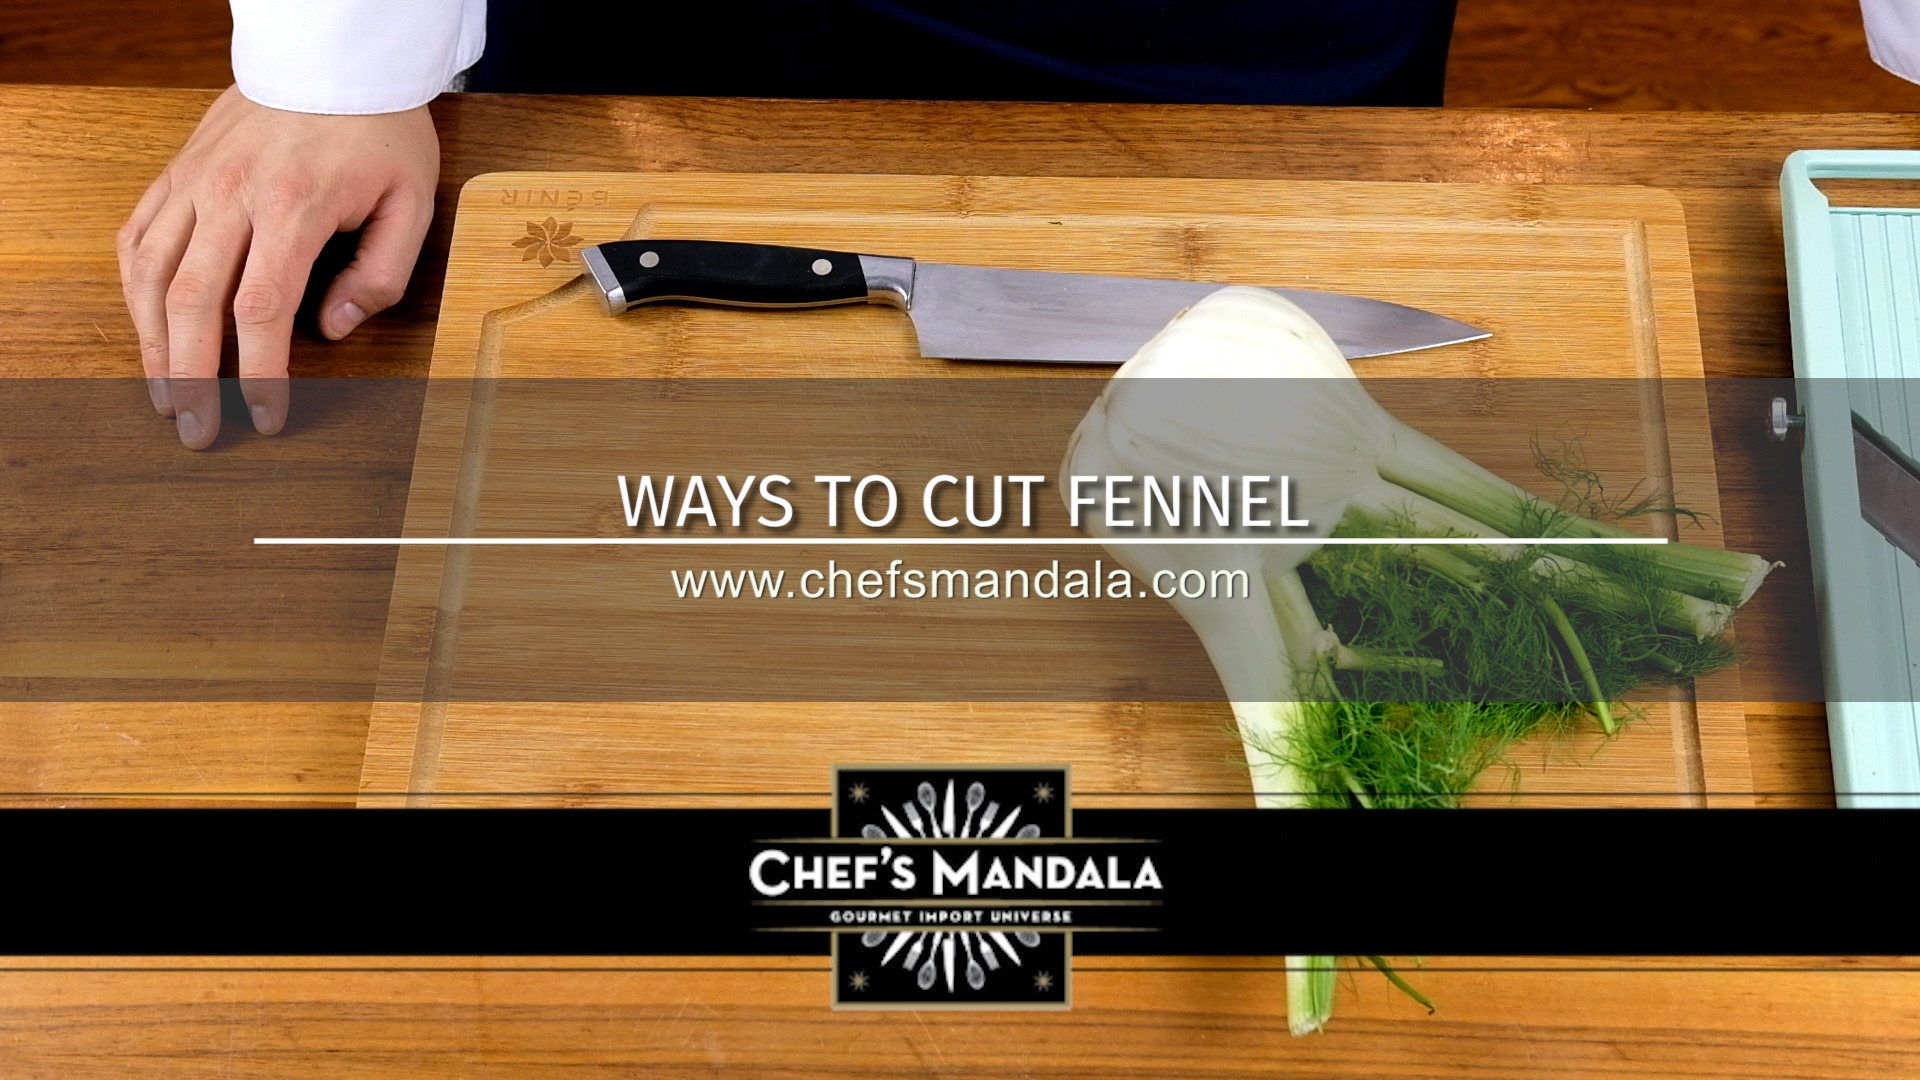 WAYS TO CUT FENNEL